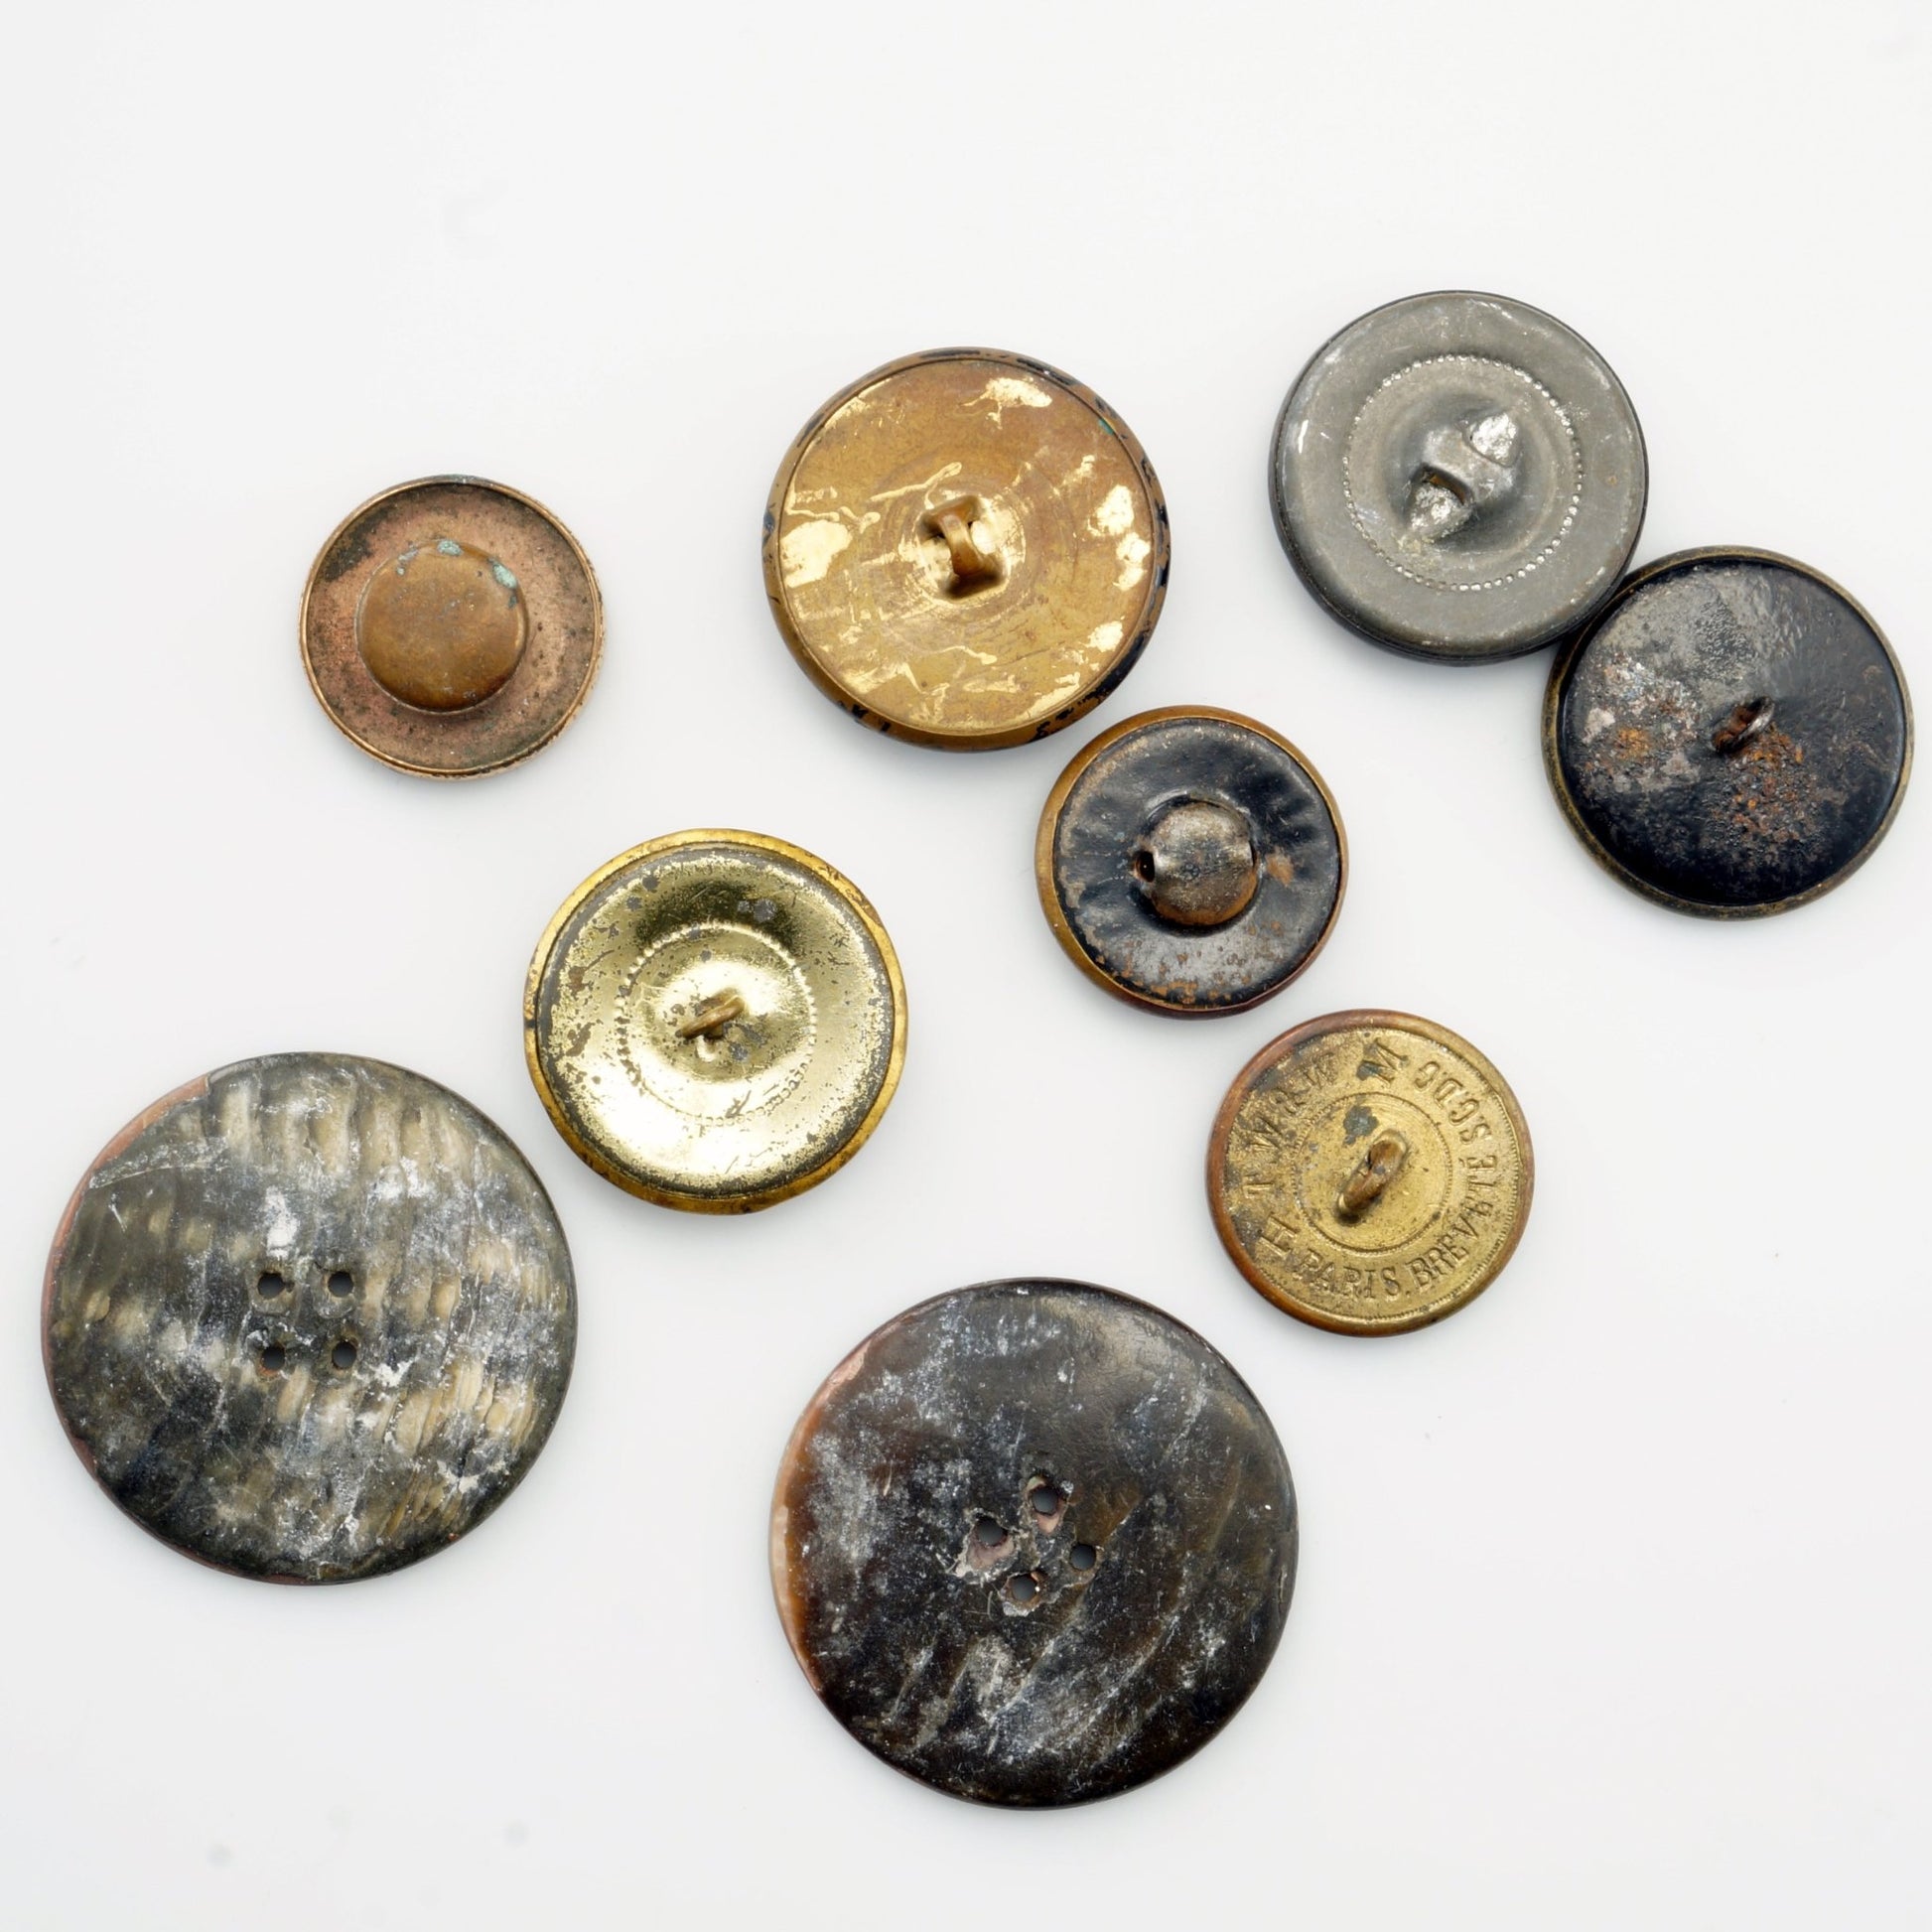 30 Antique Vintage Metal Buttons Lot2 1850-1950 